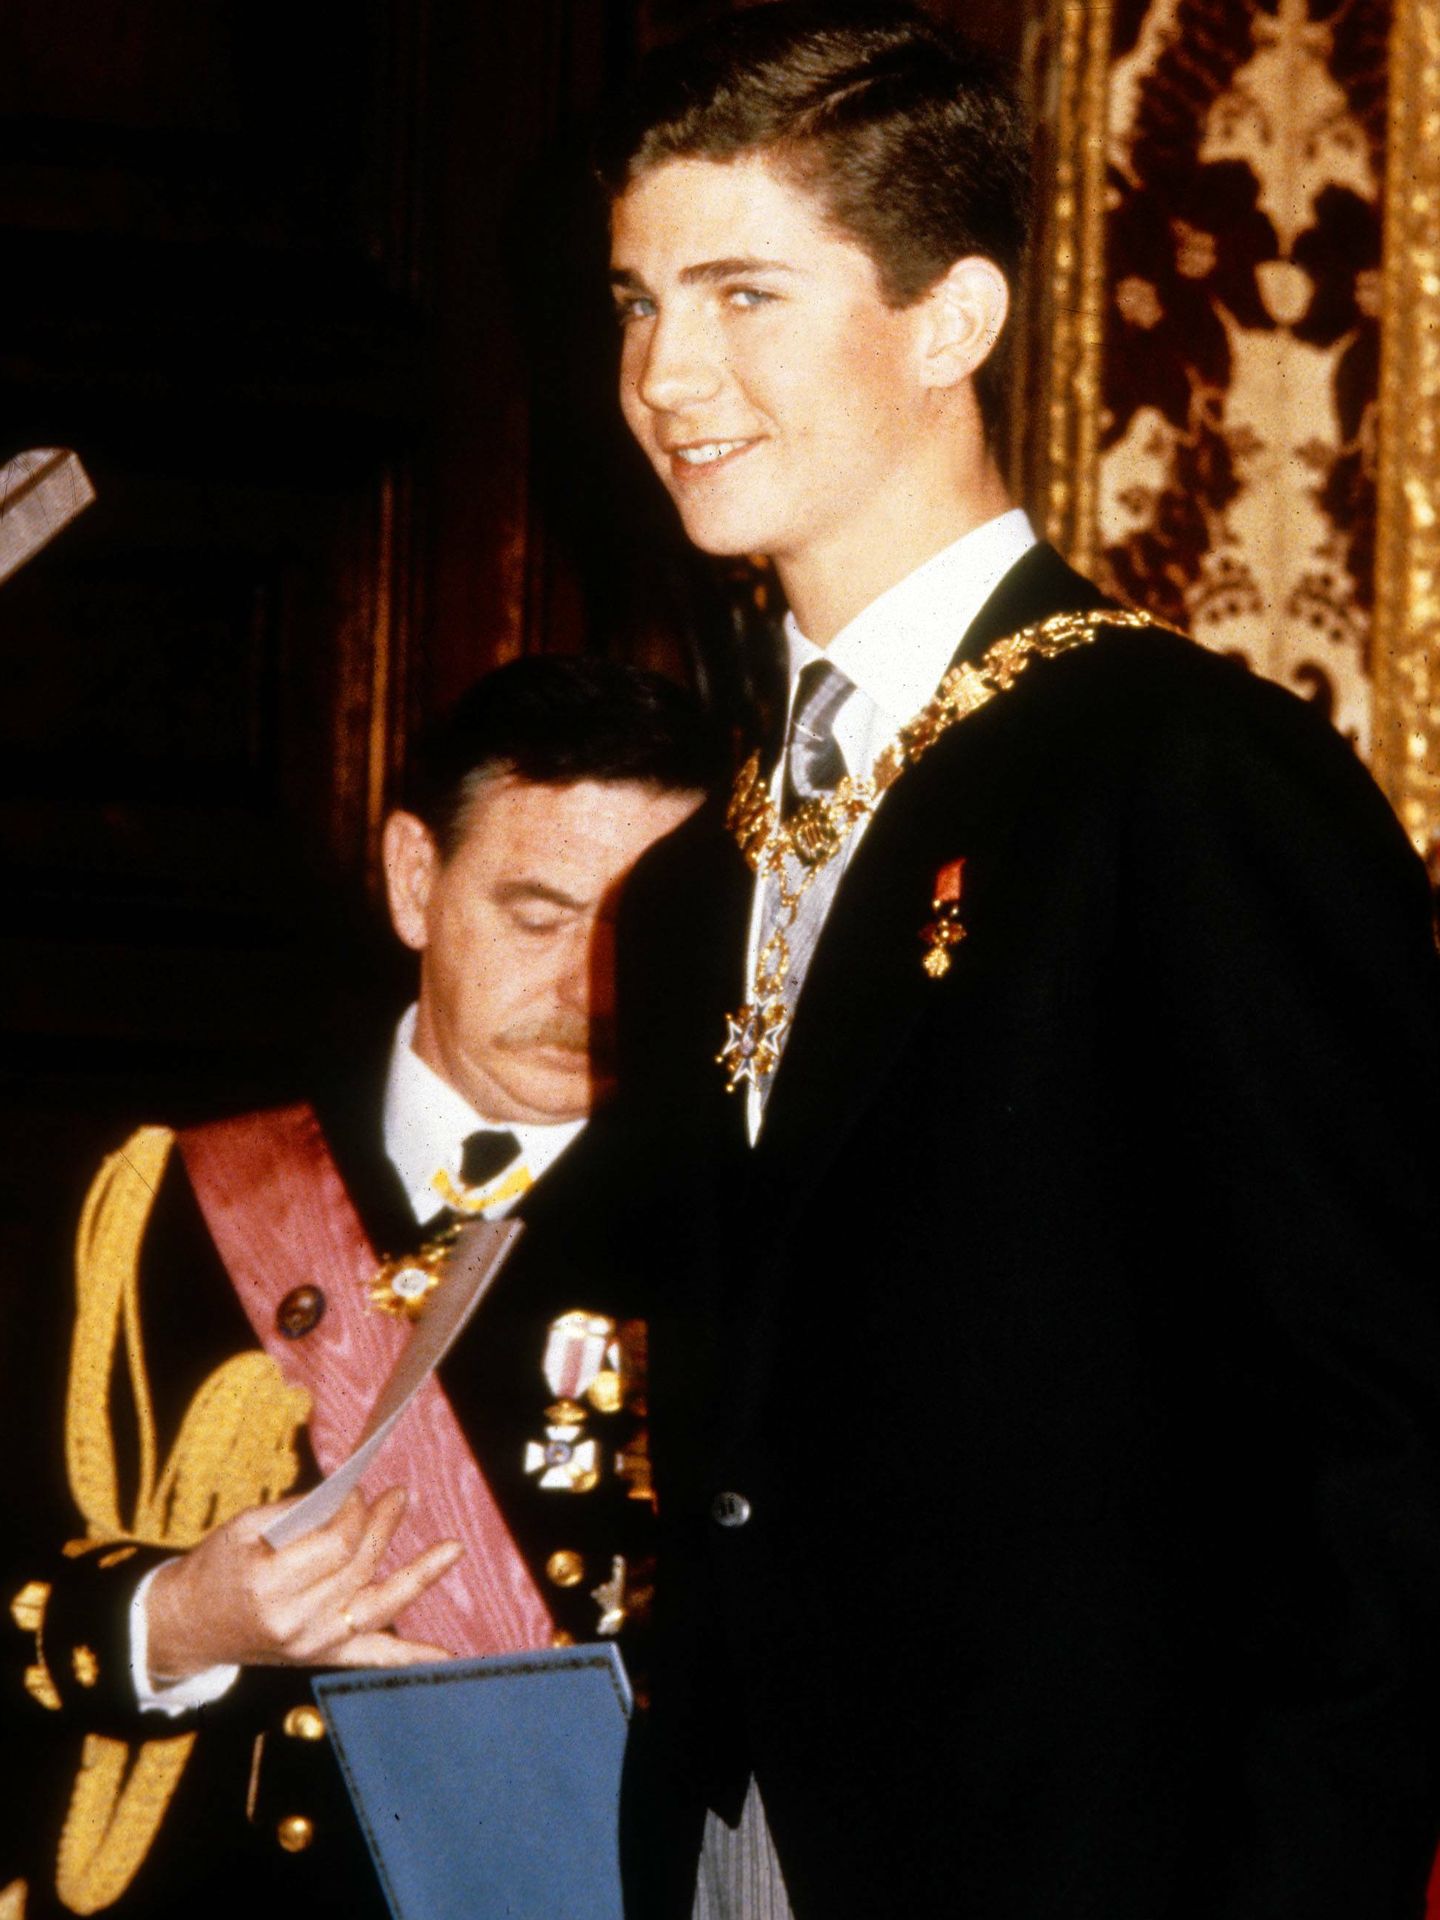 El príncipe Felipe con el collar el día de su juramento a la Constitución en 1986. (Cordon Press)